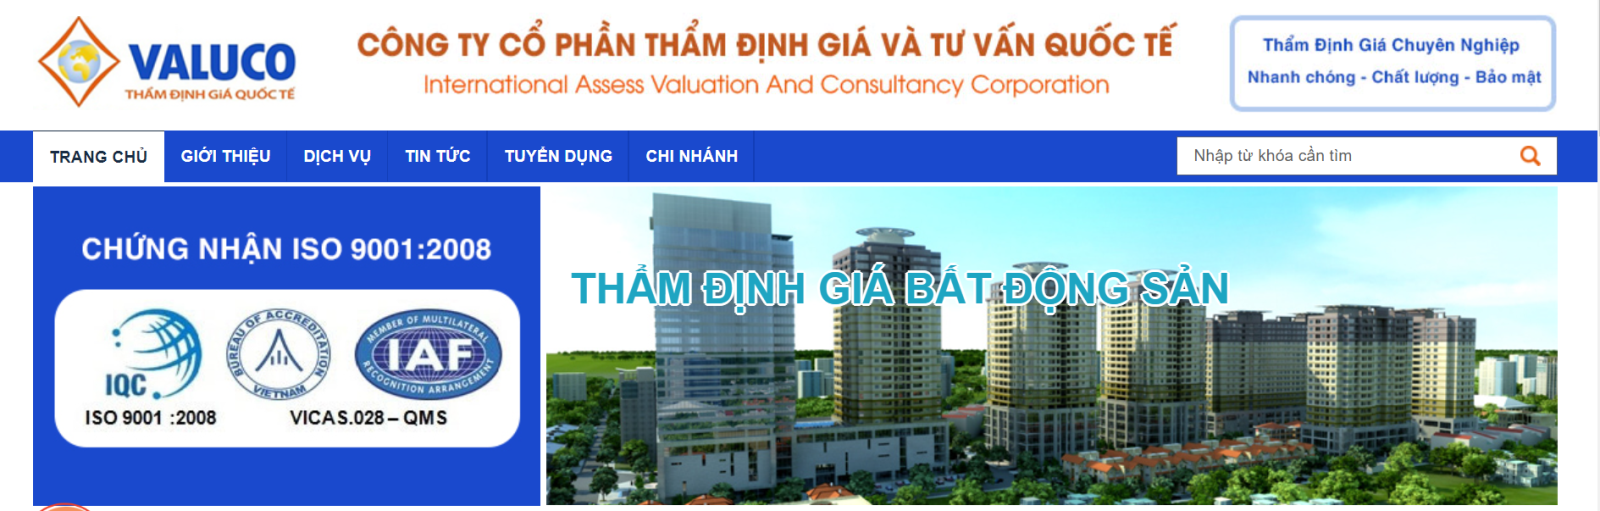 Danh sách Top 10 các Công ty Thẩm định giá Uy tín tại Việt Nam